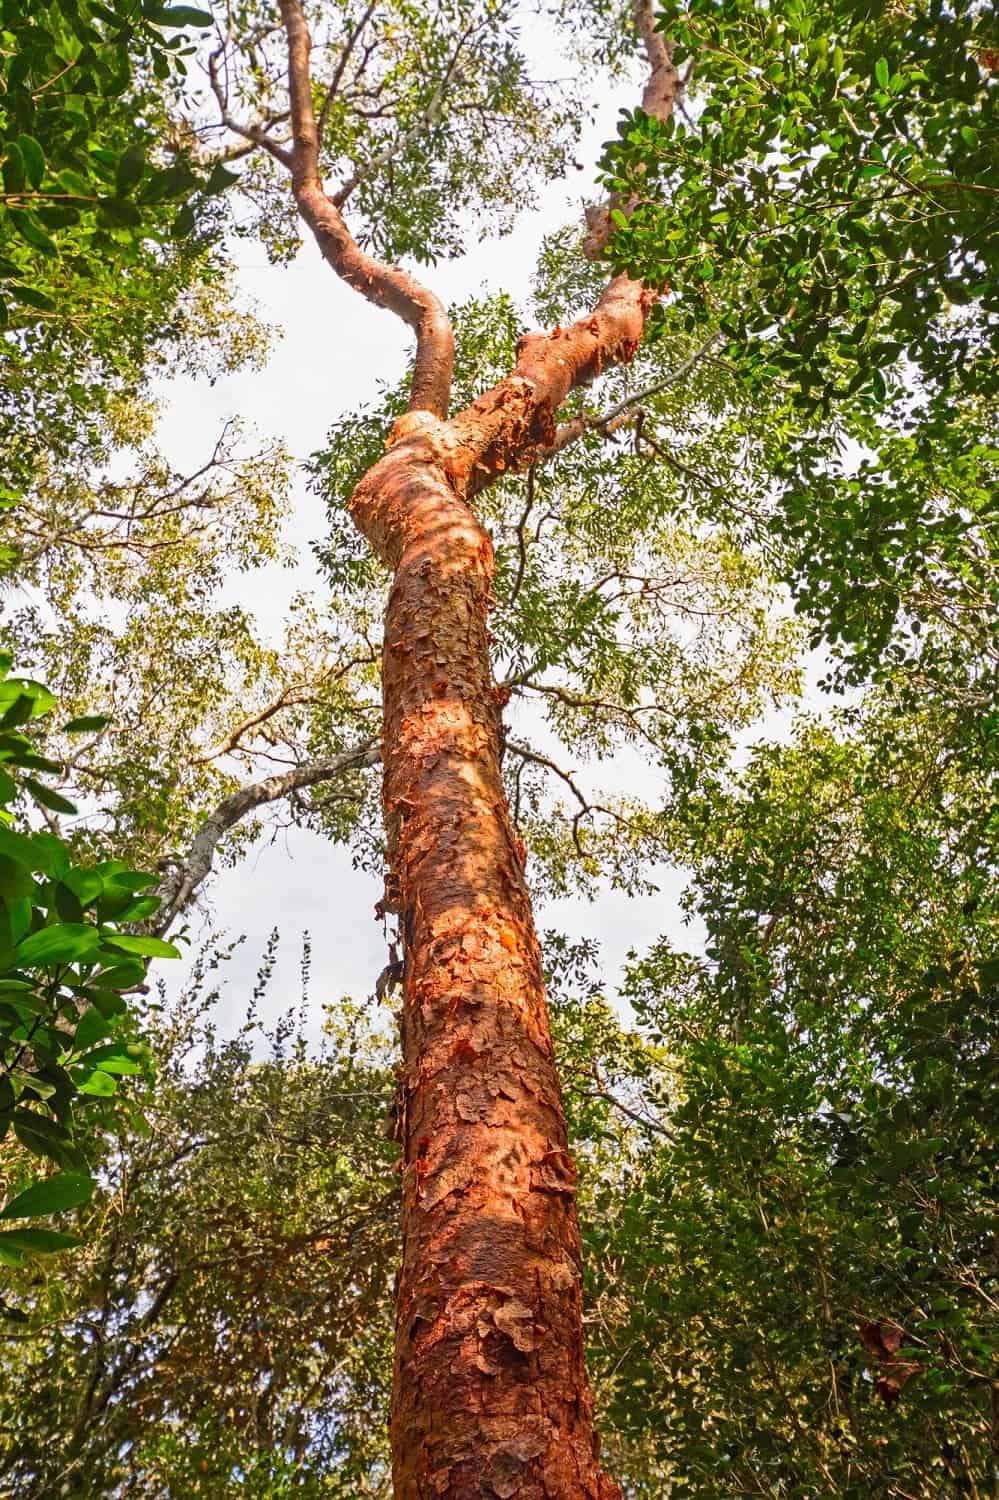 أشجار بورسيرا سيماروبا المعروفة محلياً أحياناً باسم "أشجار جيوبيه" (jiobe). ديبوزيت فوتوز